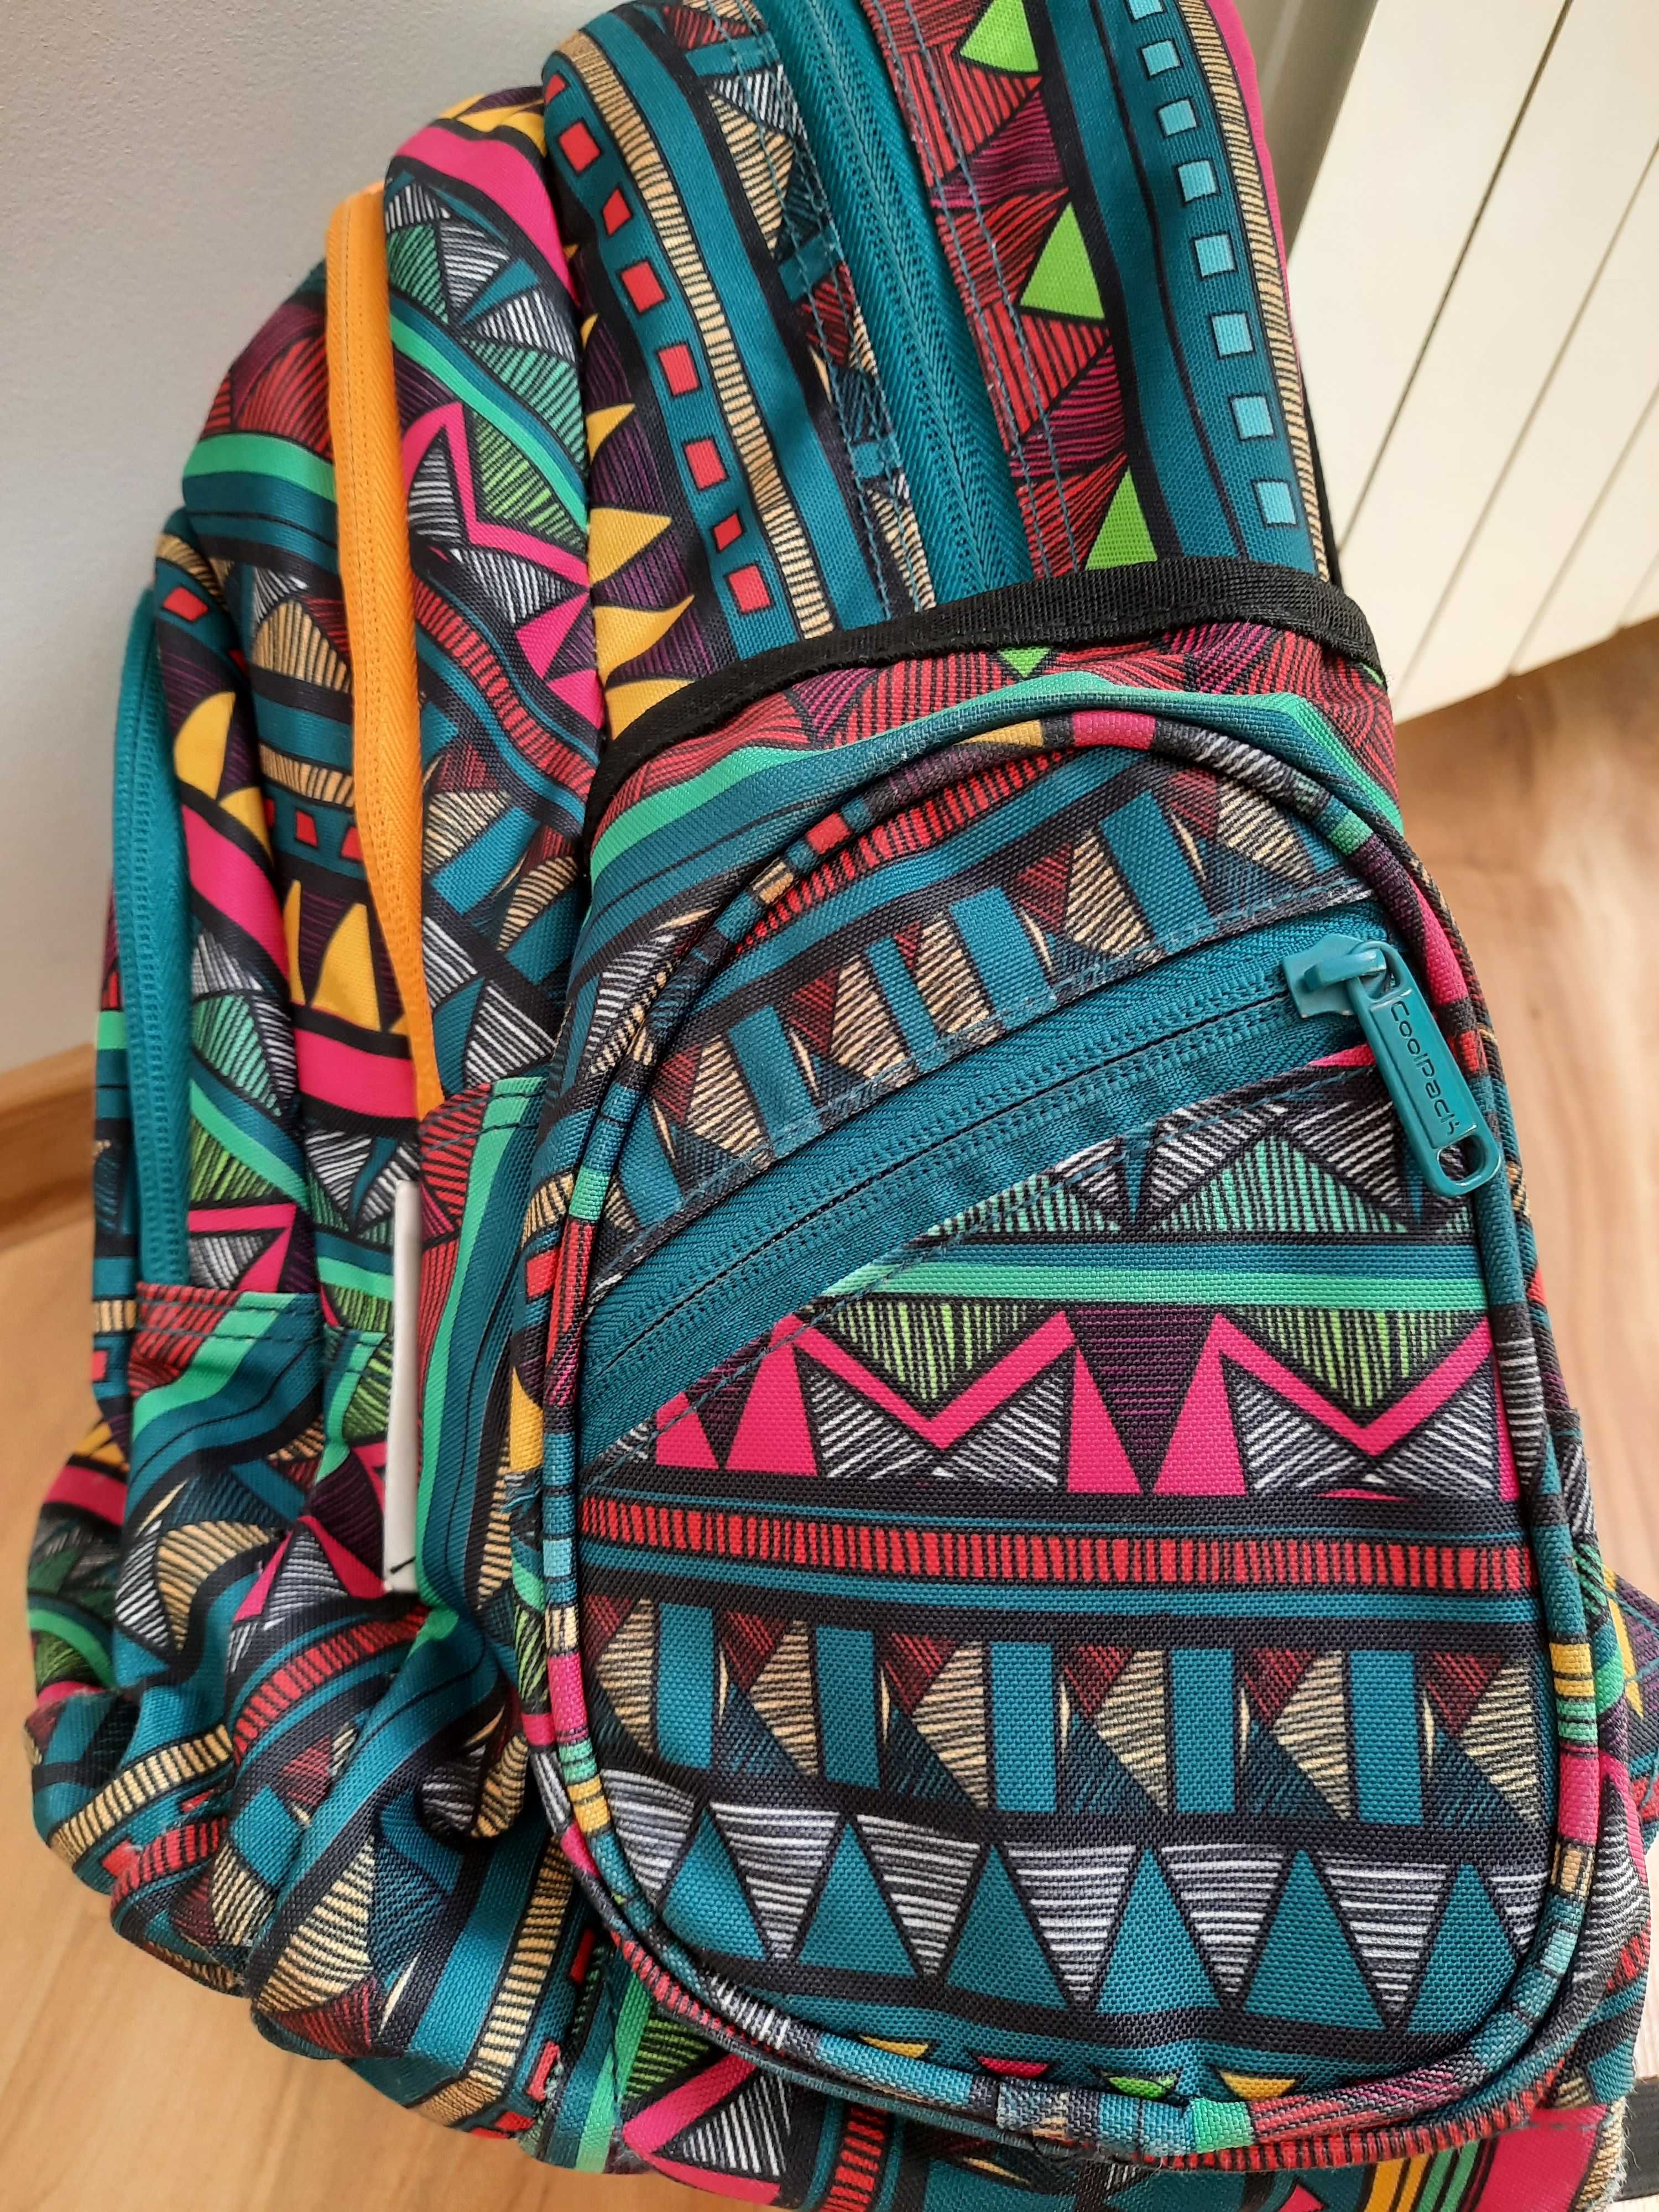 Plecak Coolpack do kl. 4-8 dużo kieszeni - aż 7 zewnętrznych